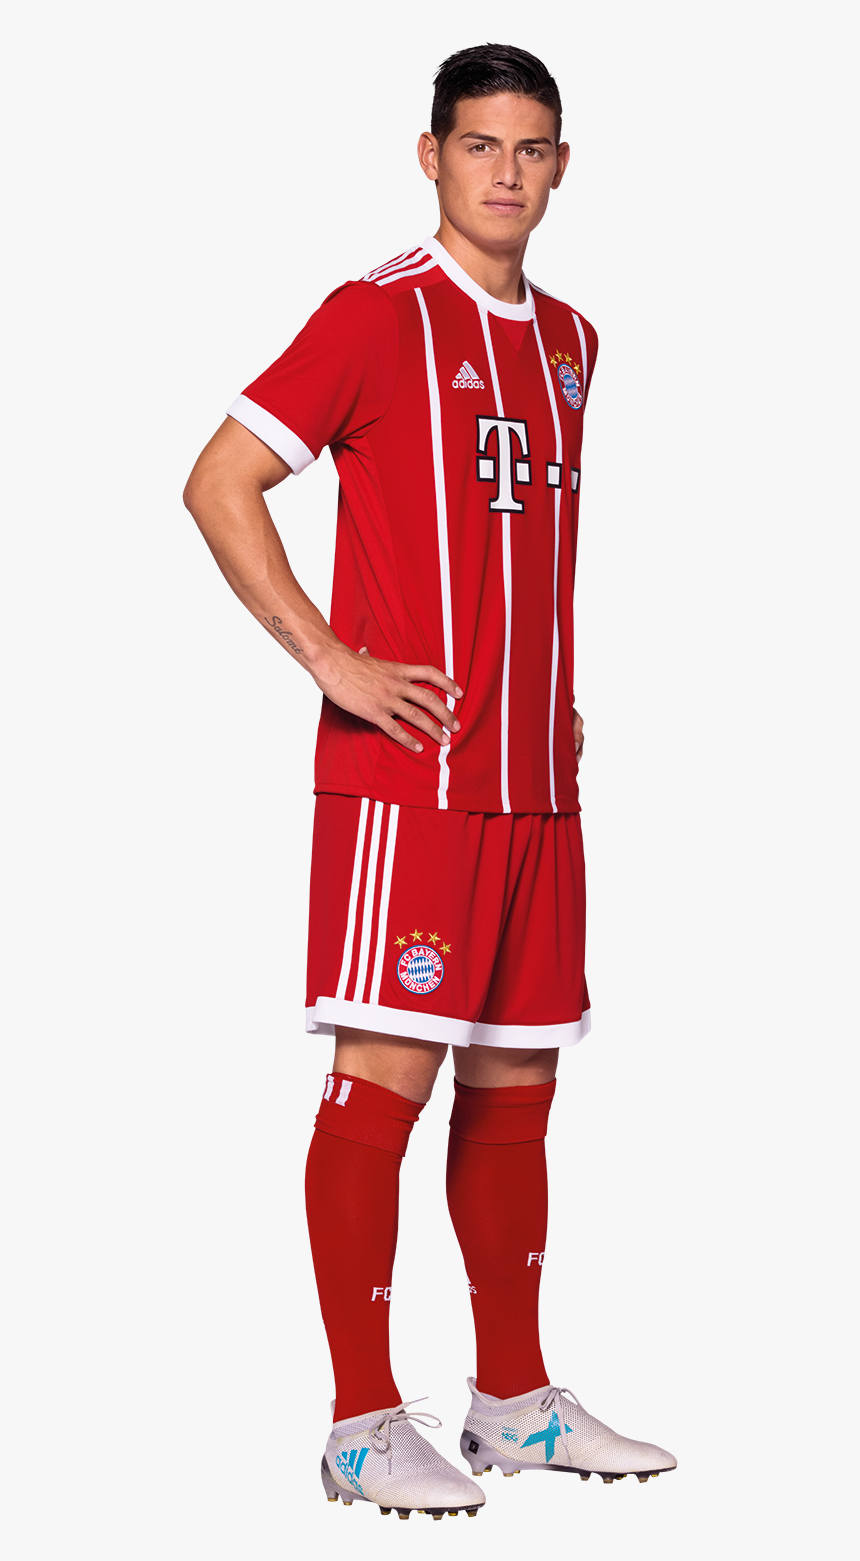 Bayern Munich James Rodriguez Png 